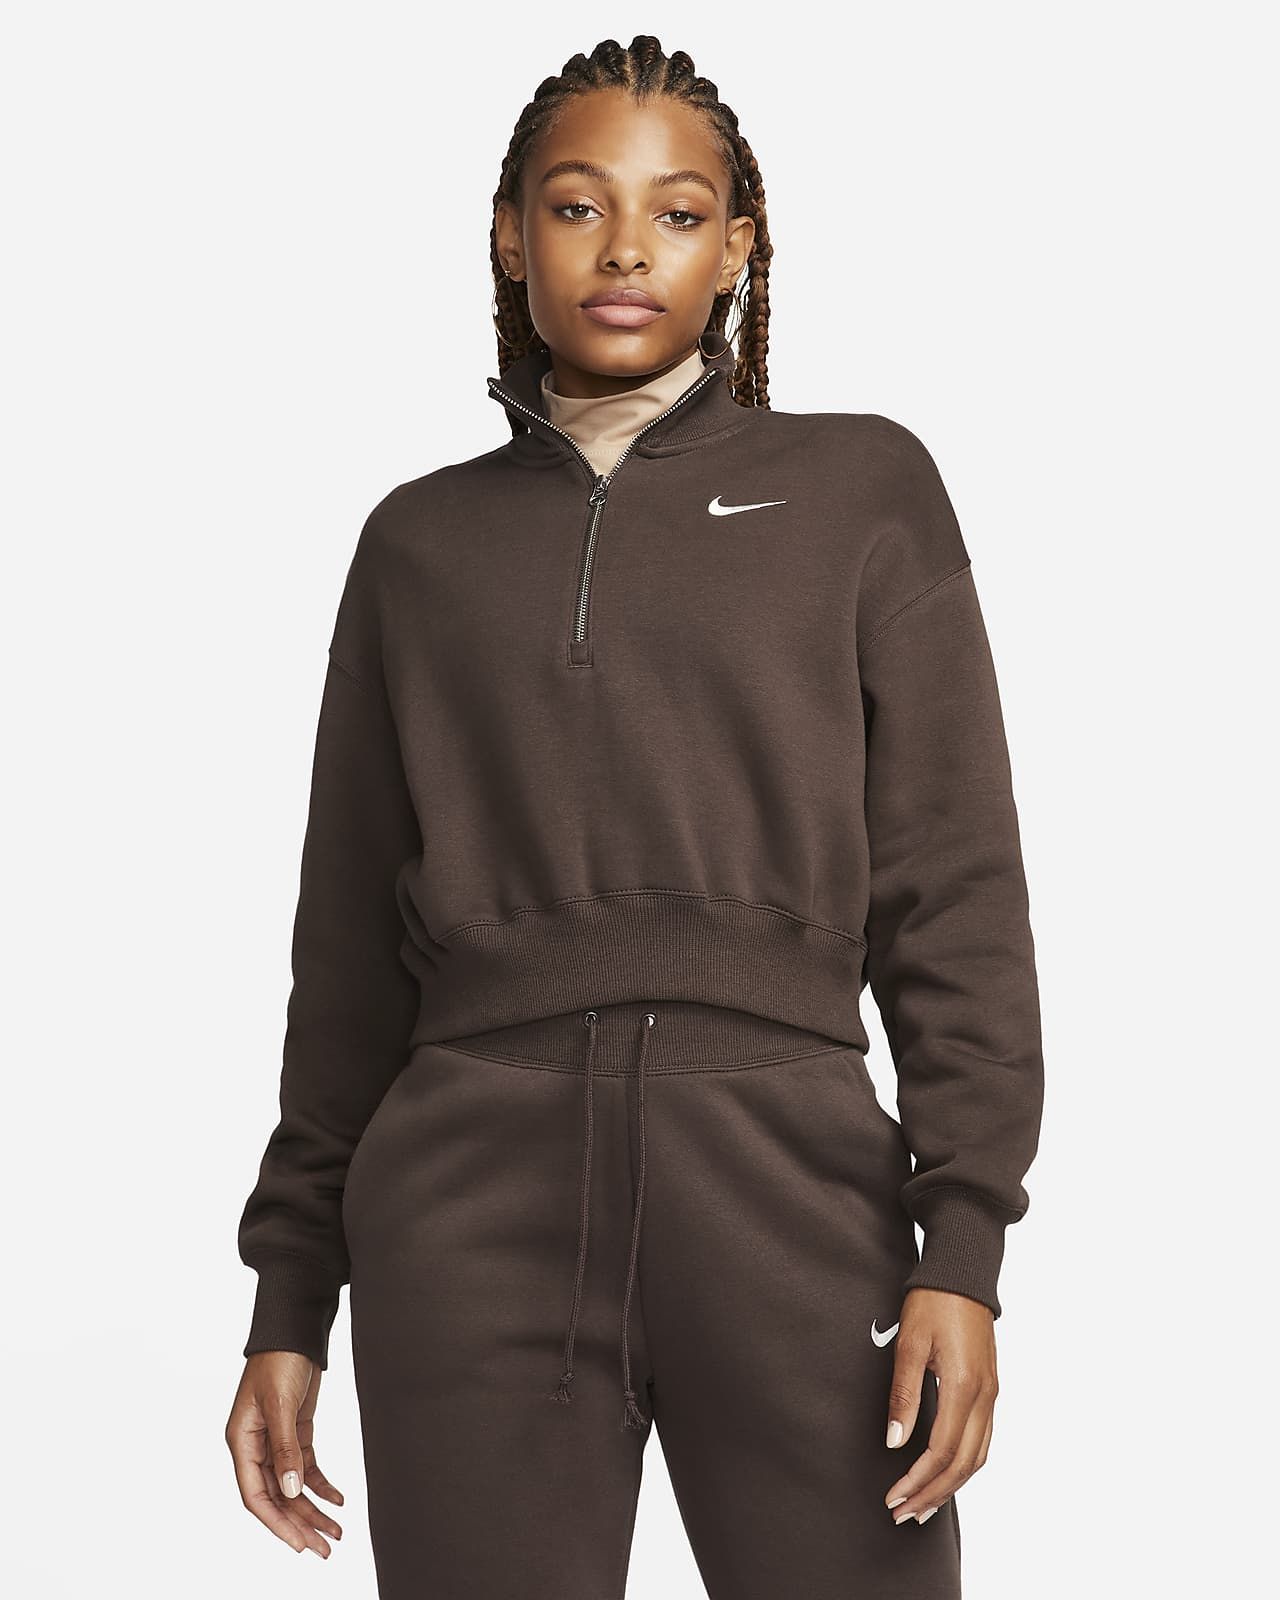 Nike Sportswear Phoenix Fleece Women's 1/2-Zip Cropped Sweatshirt. Nike.com | Nike (US)